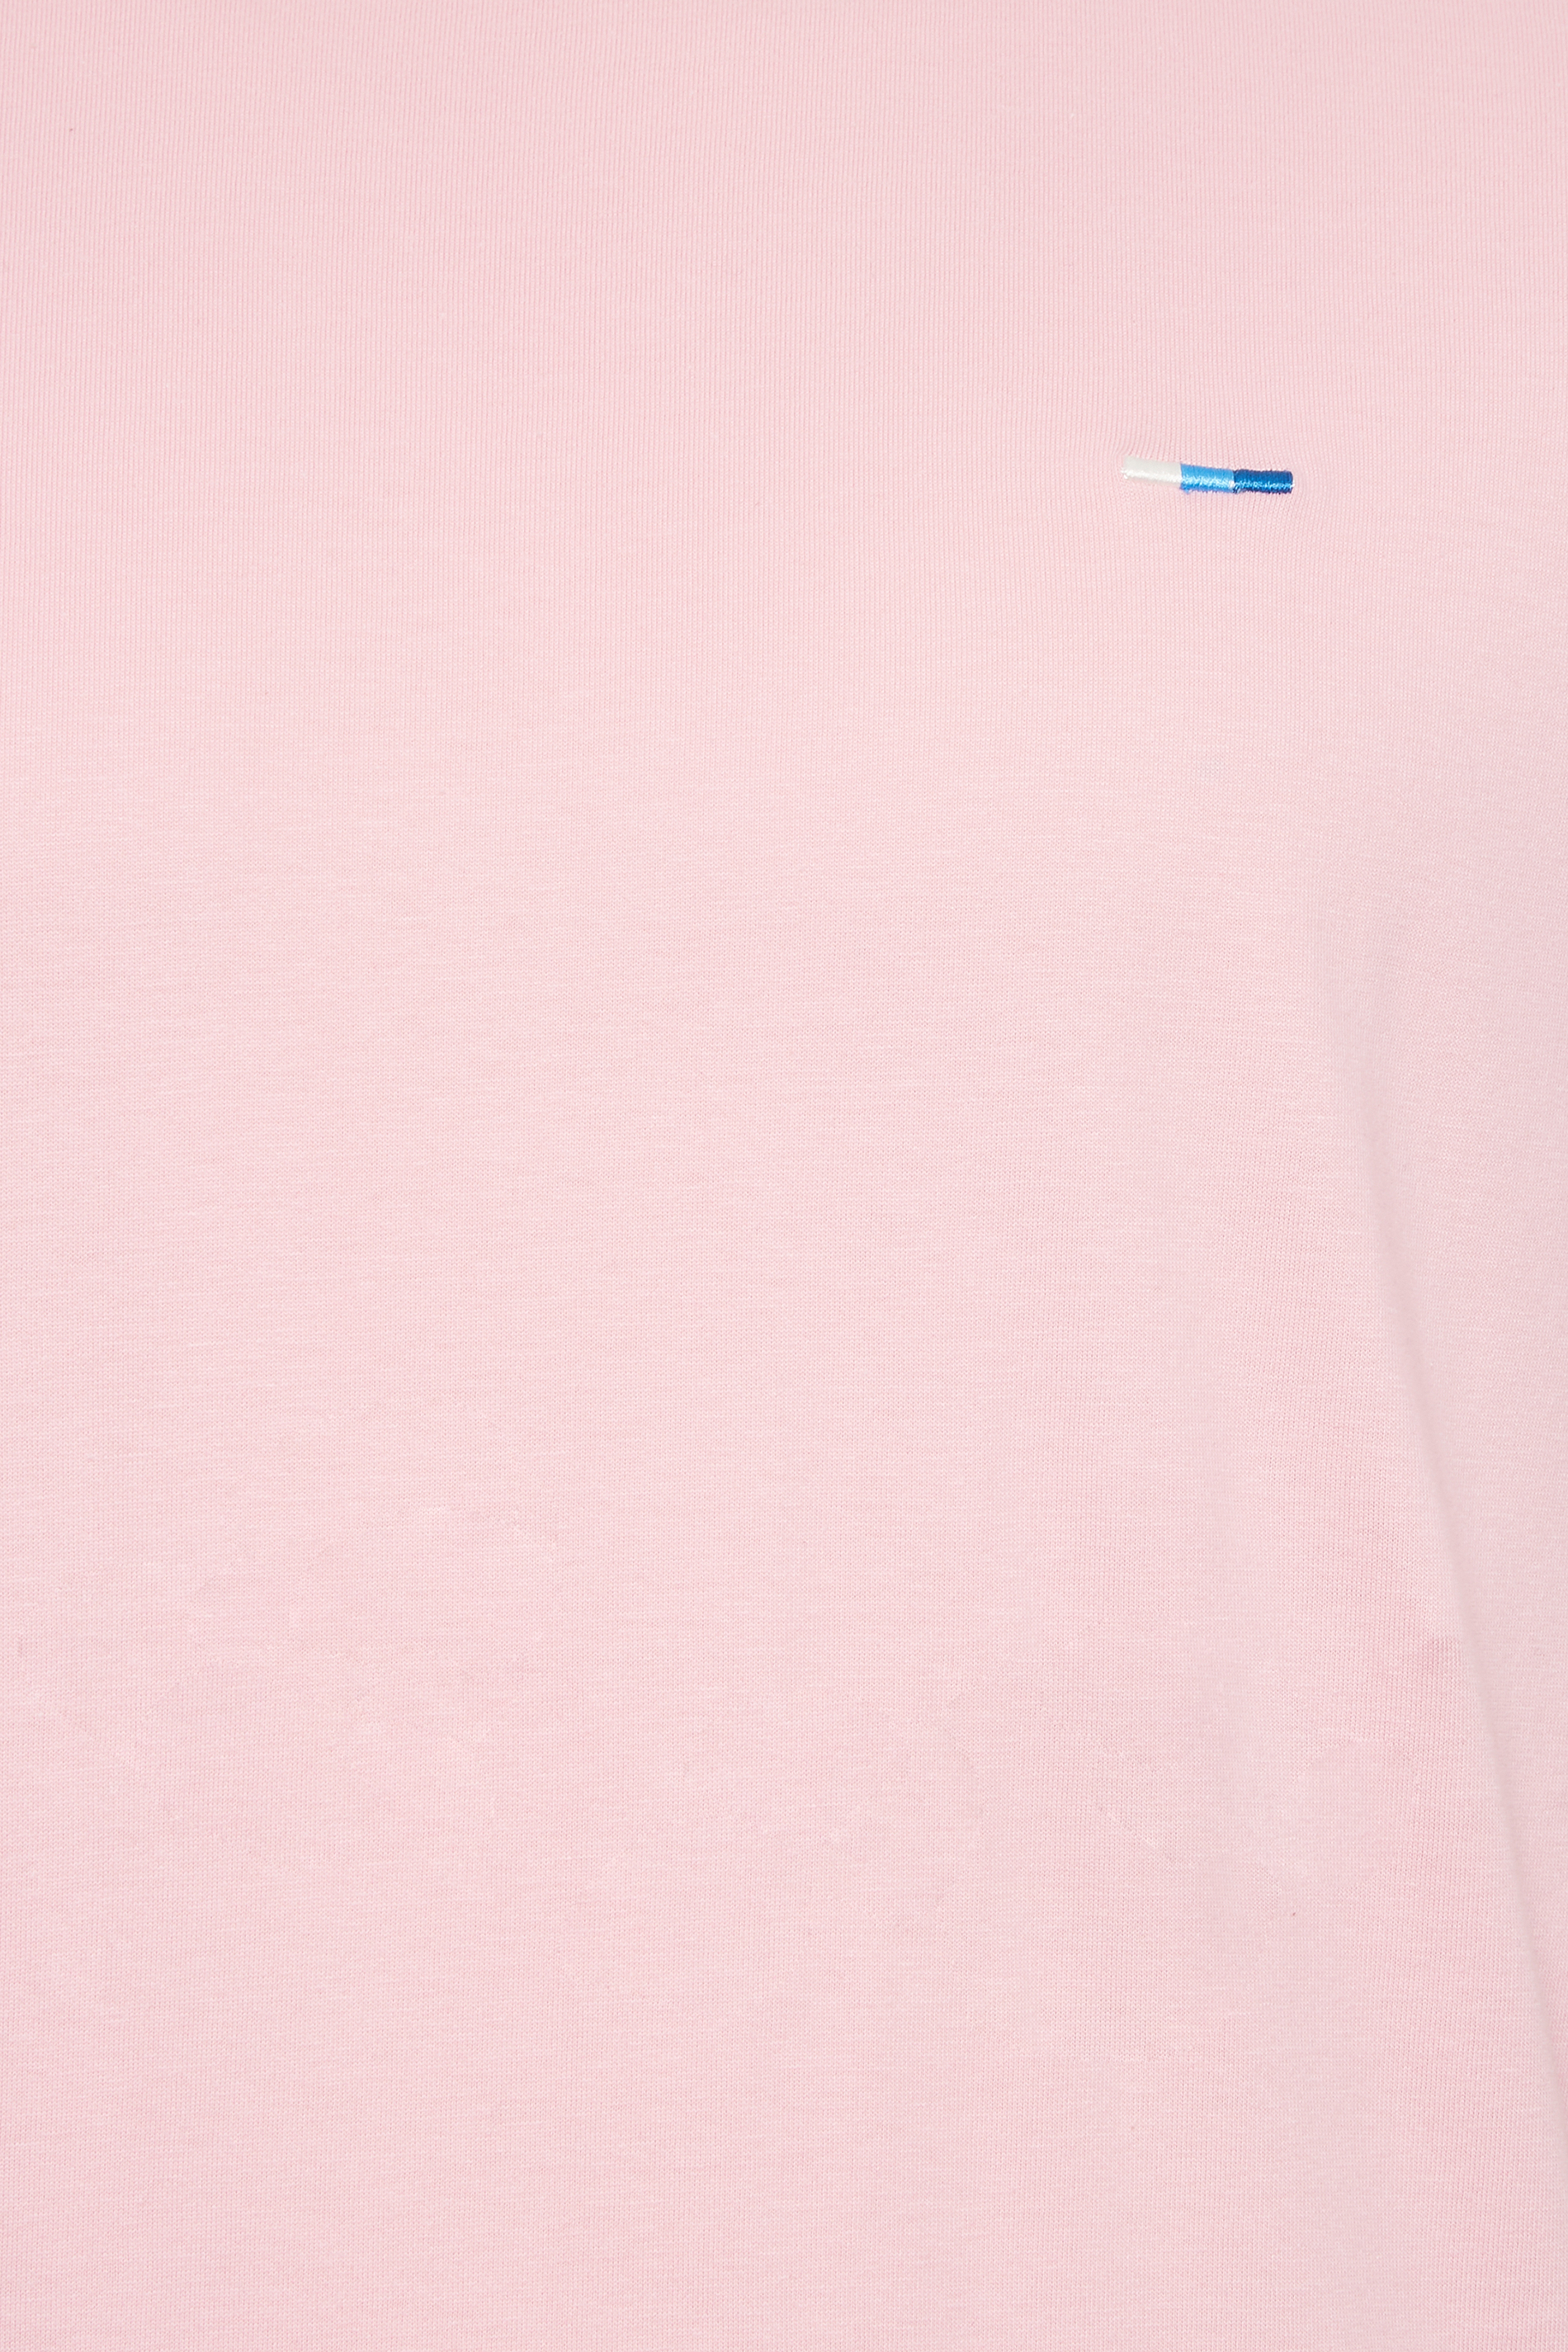 BadRhino Big & Tall Light Pink Core T-Shirt | BadRhino 2